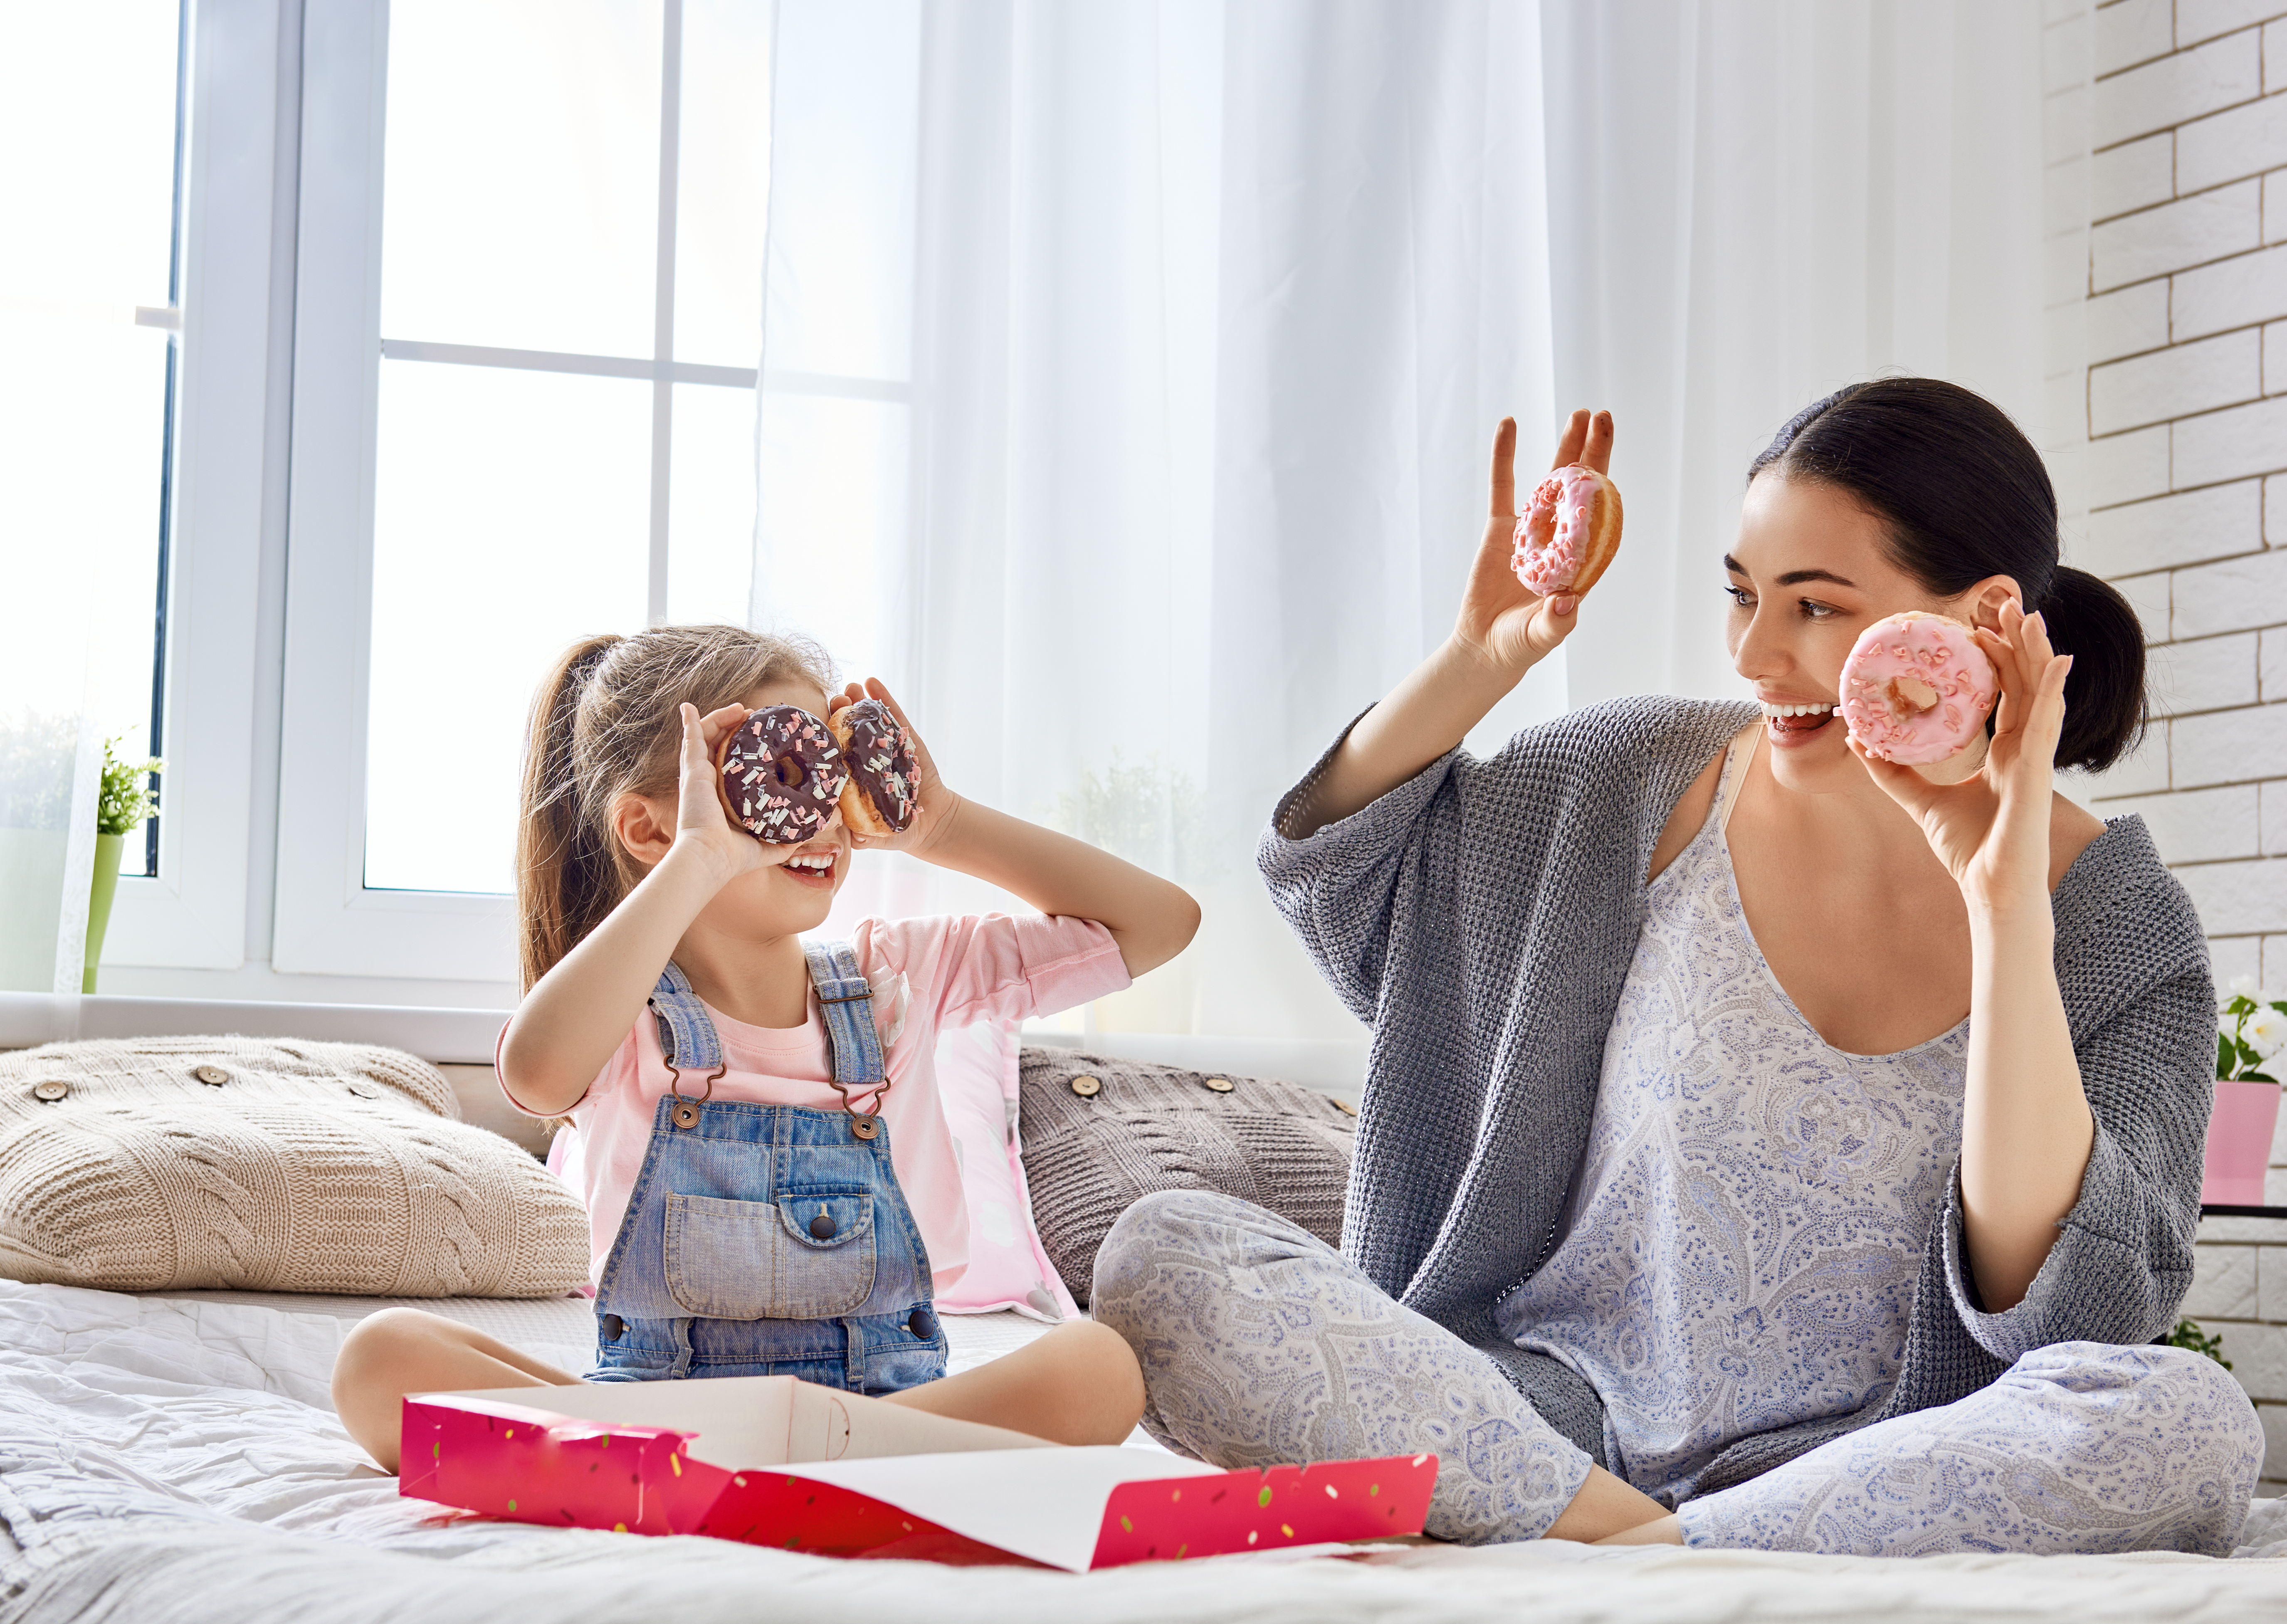 Una madre y su hija disfrutando de unas donas | Foto: Shutterstock